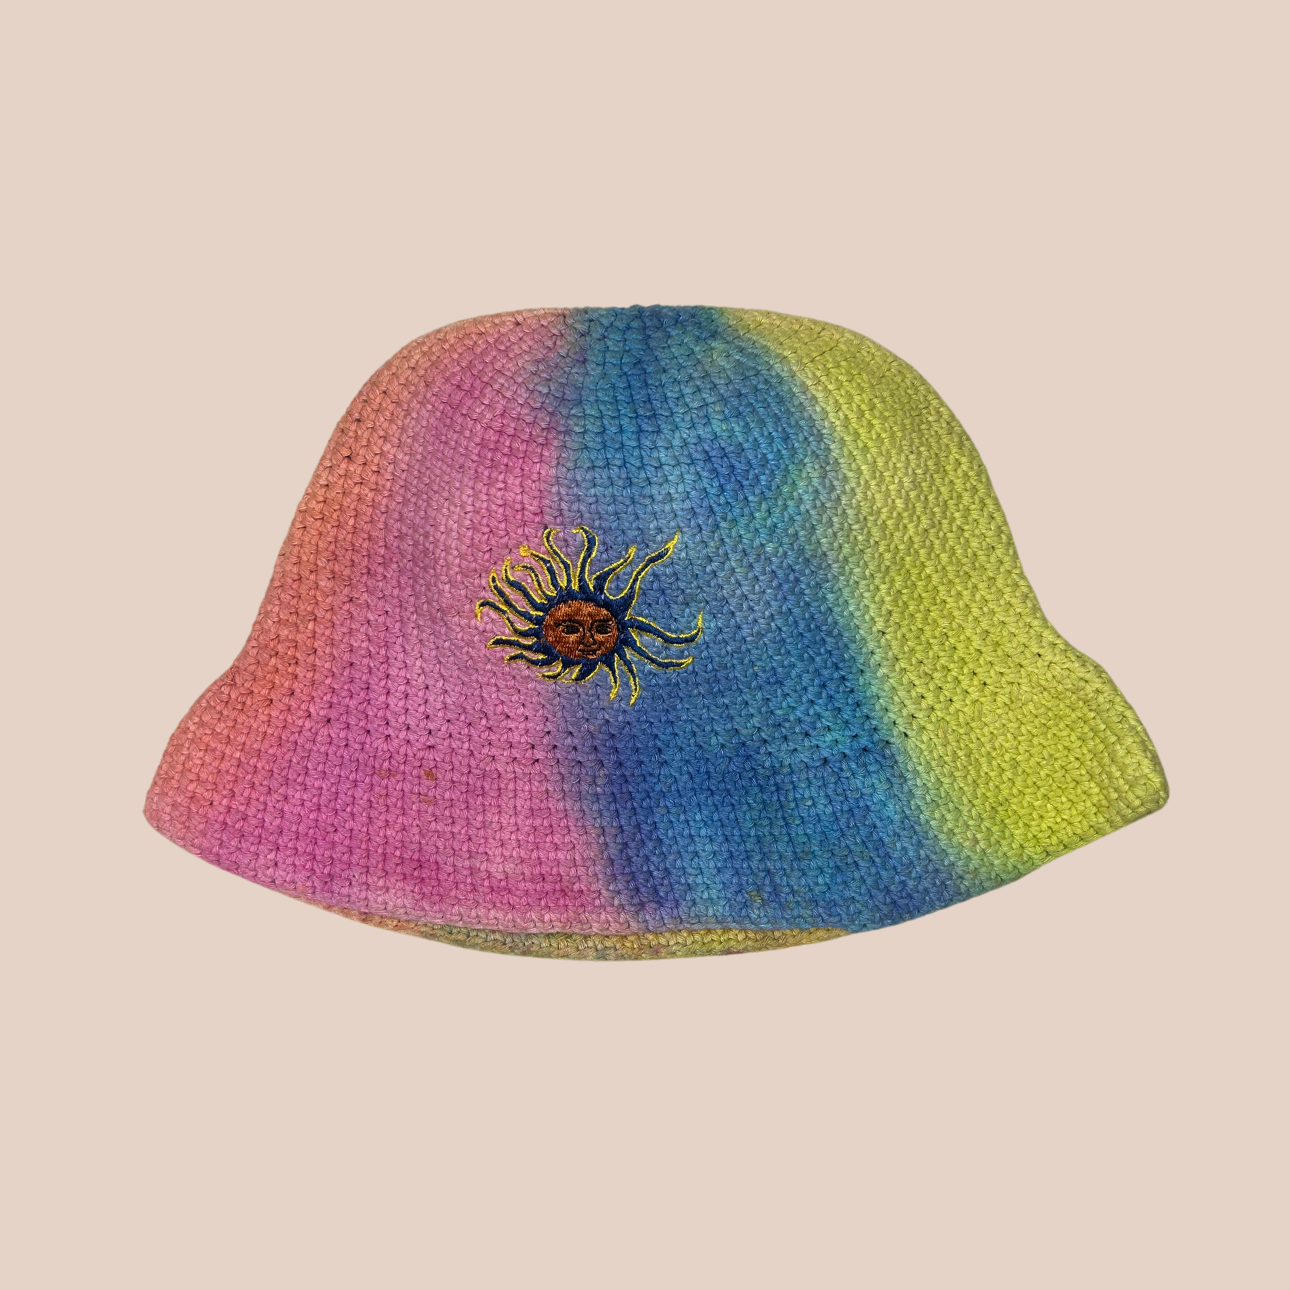 Un bucket hat crocheté en laine et acrylique, arborant des couleurs vives et audacieuses, motif soleil